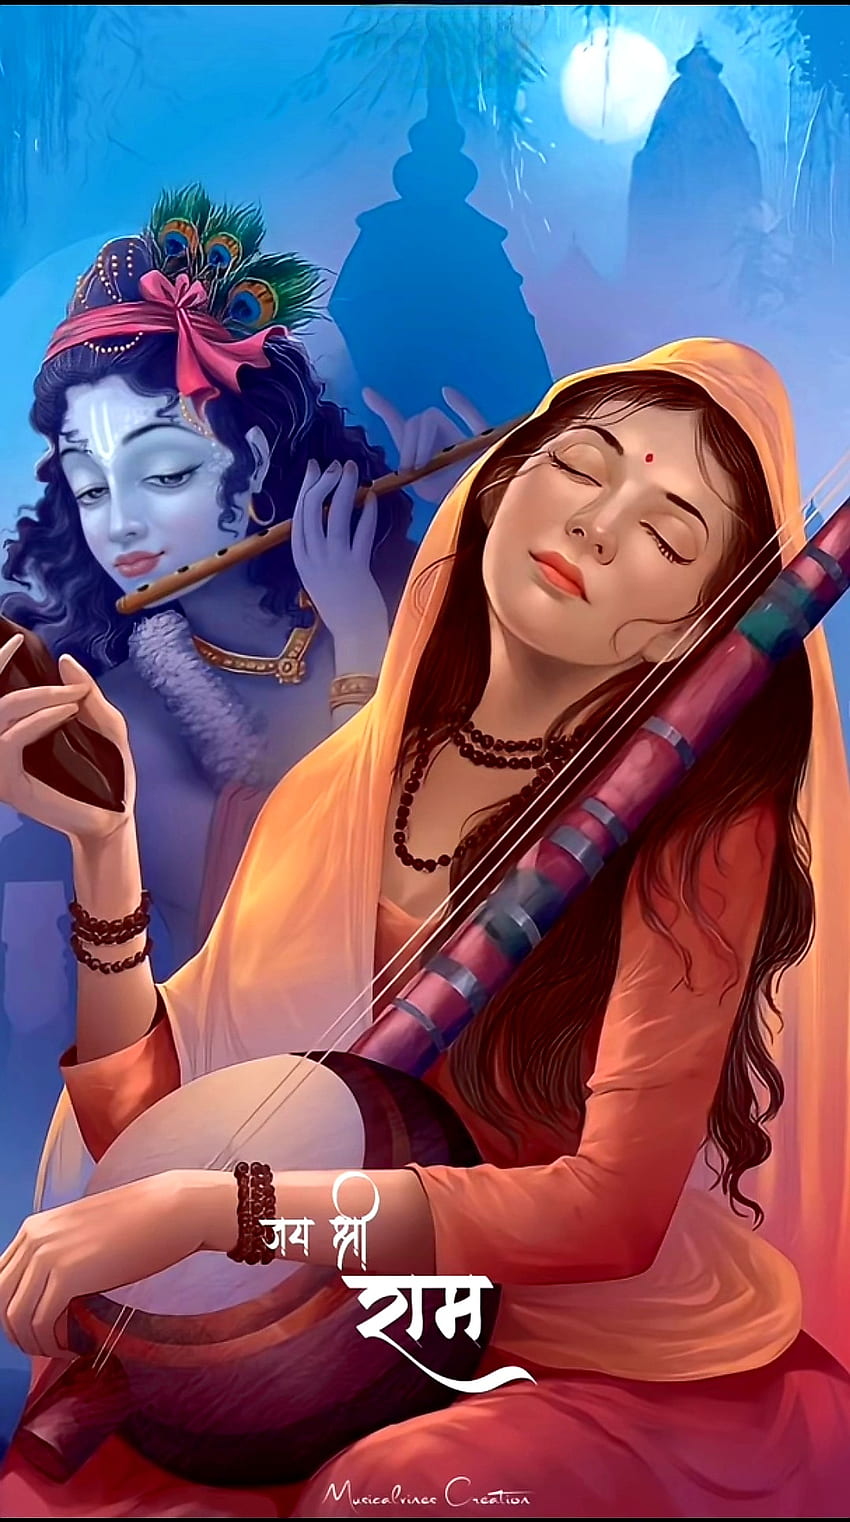 Jai Shree Krishna, Meerabai, romysingh264 HD phone wallpaper | Pxfuel